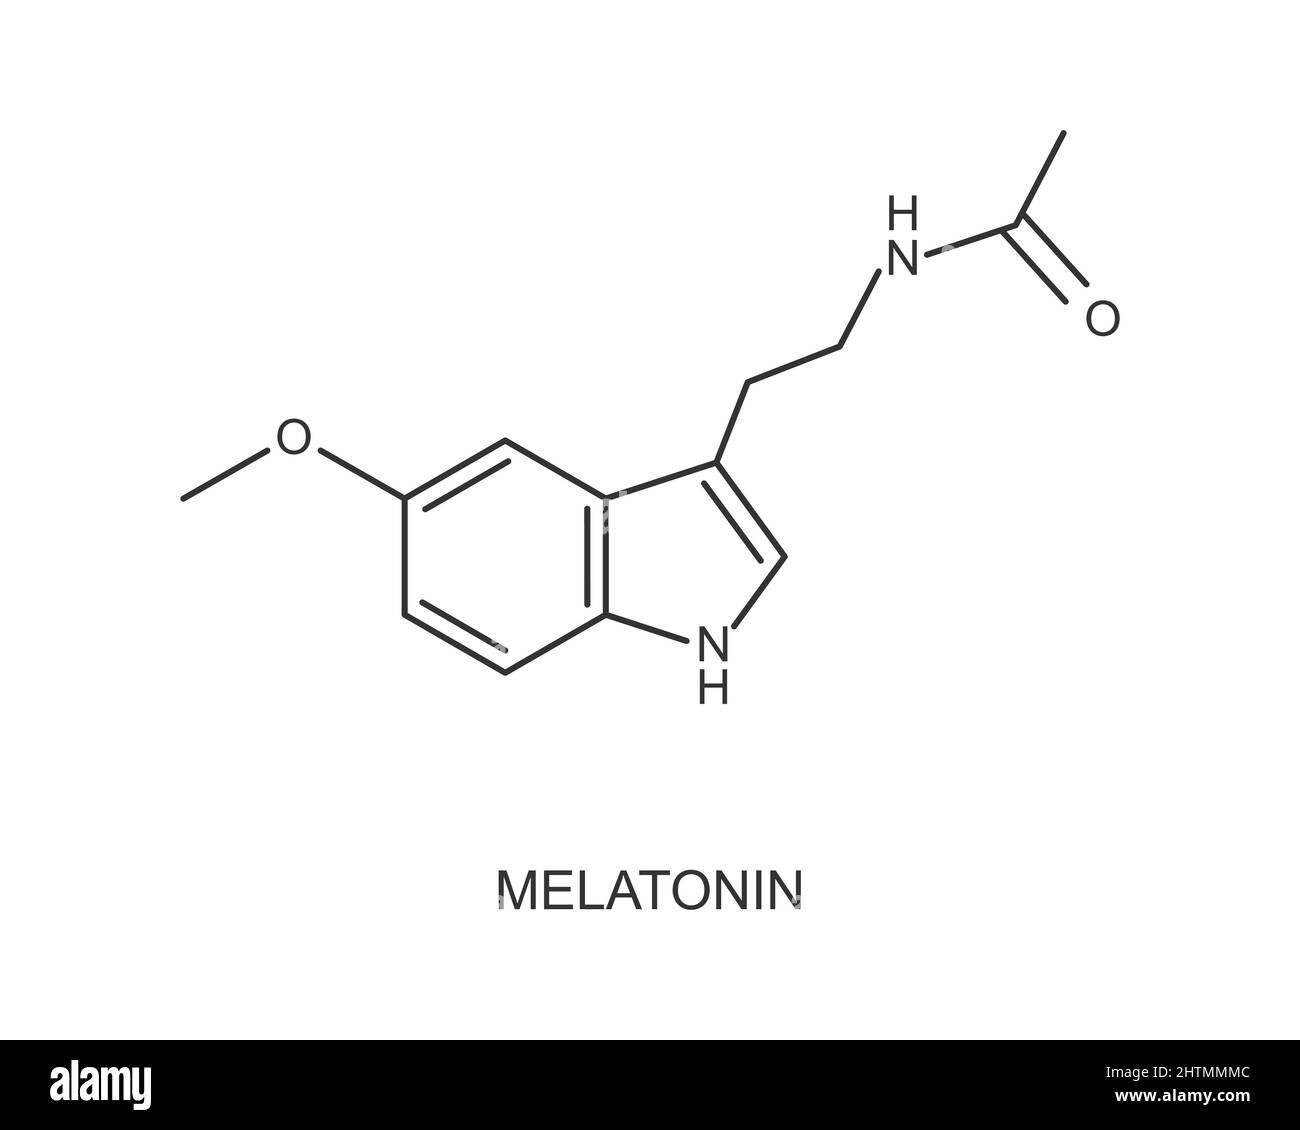 Melatonin-Molekülstruktur. Hormon für Jetlag, Schlaflosigkeit, zirkadiane Rhythmusstörungen Therapie verwendet. Symbol für die Regelung des Schlaf- und Weckzyklus auf weißem Hintergrund isoliert. Vektorgrafik Stock Vektor